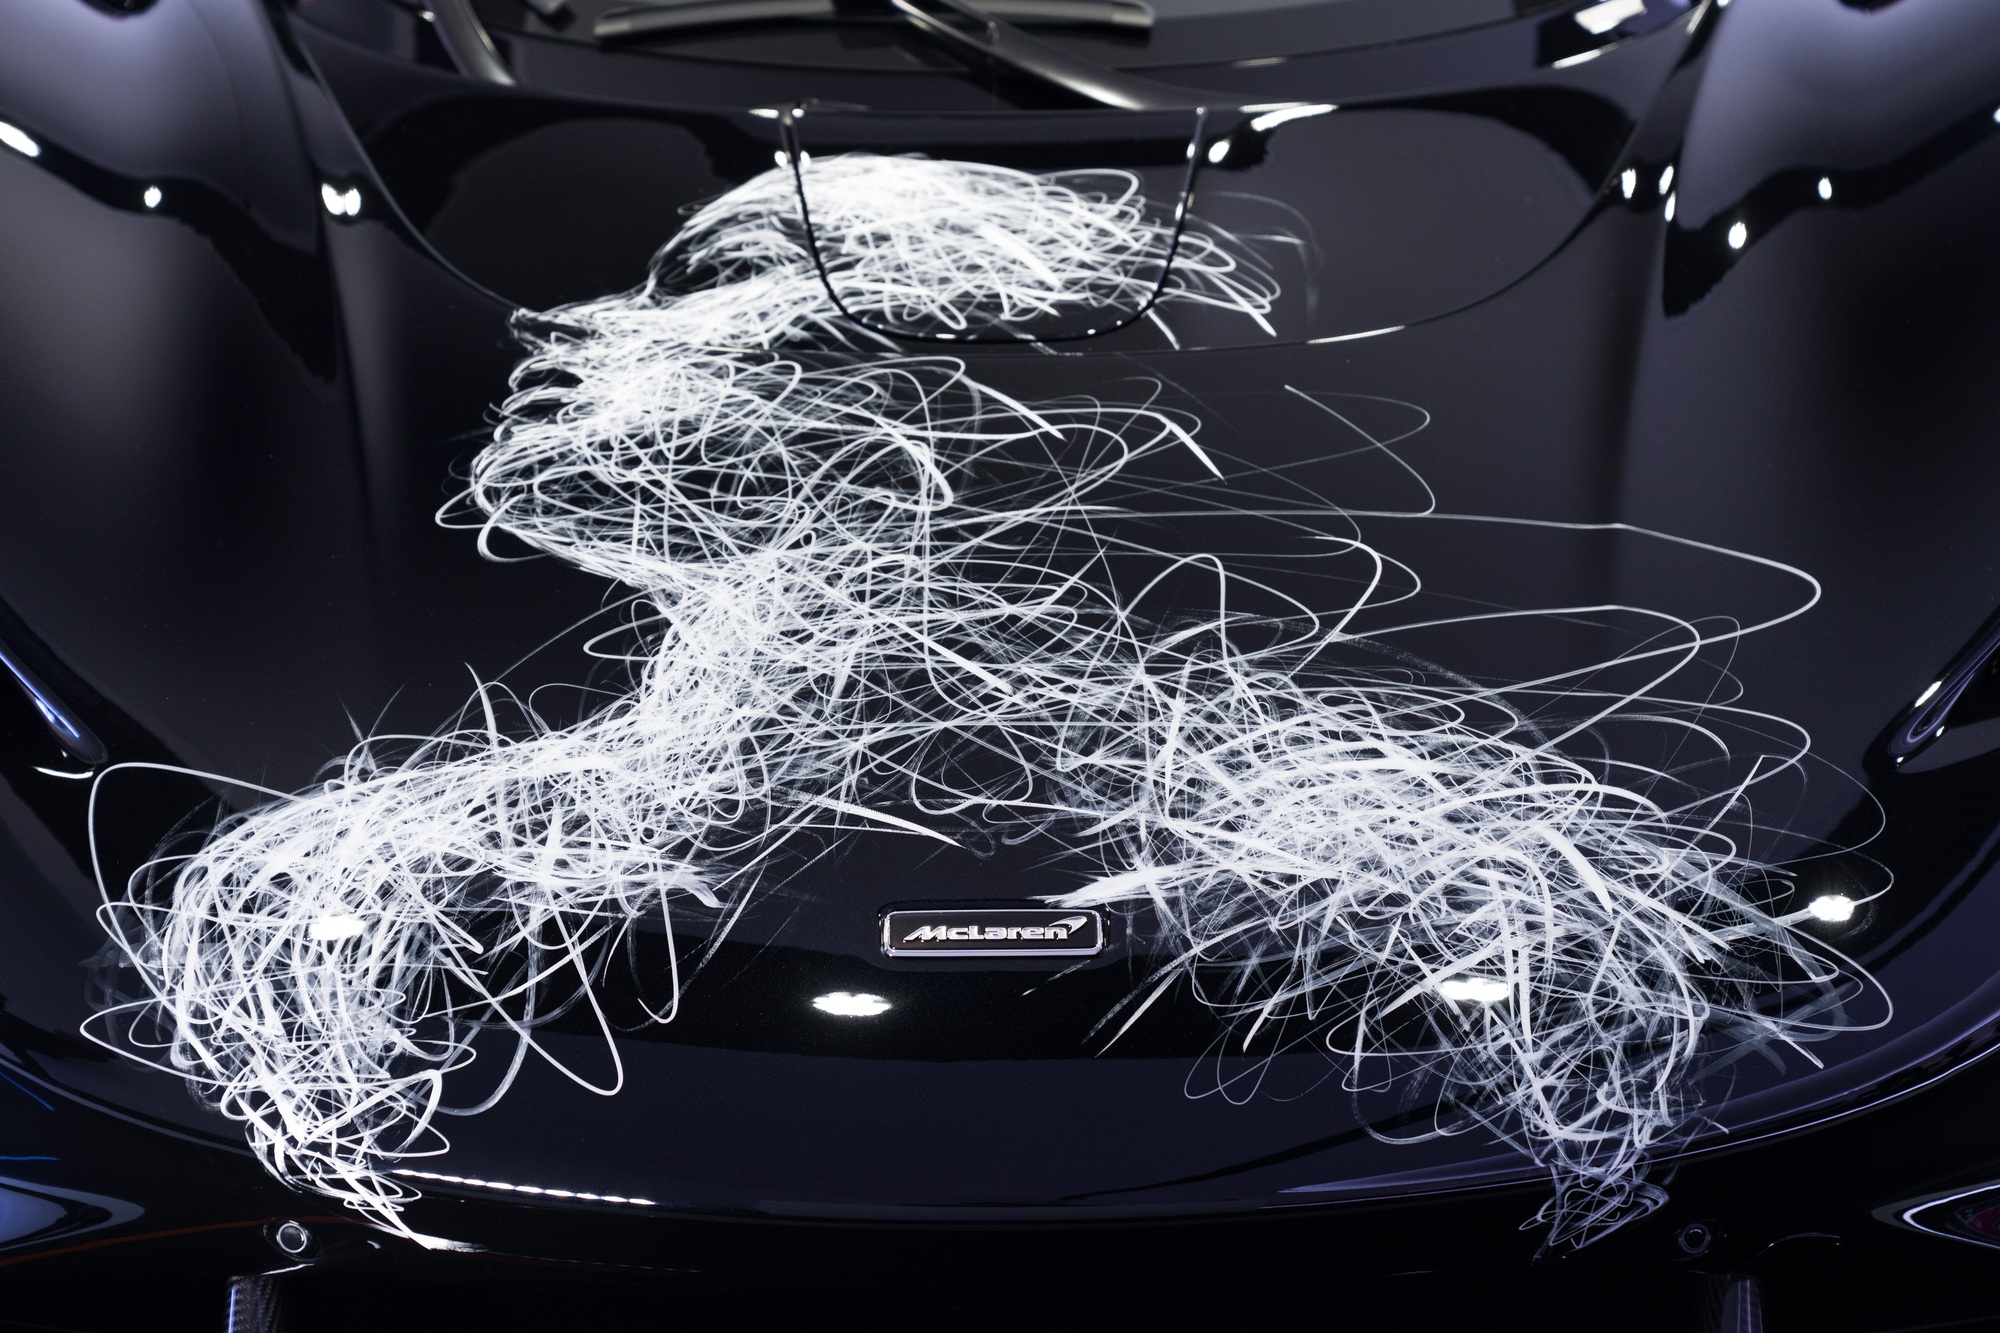 Minh Nhựa chính thức nhận McLaren Elva độc nhất thế giới, cho hoạ sĩ ‘thích vẽ gì lên xe cũng được’